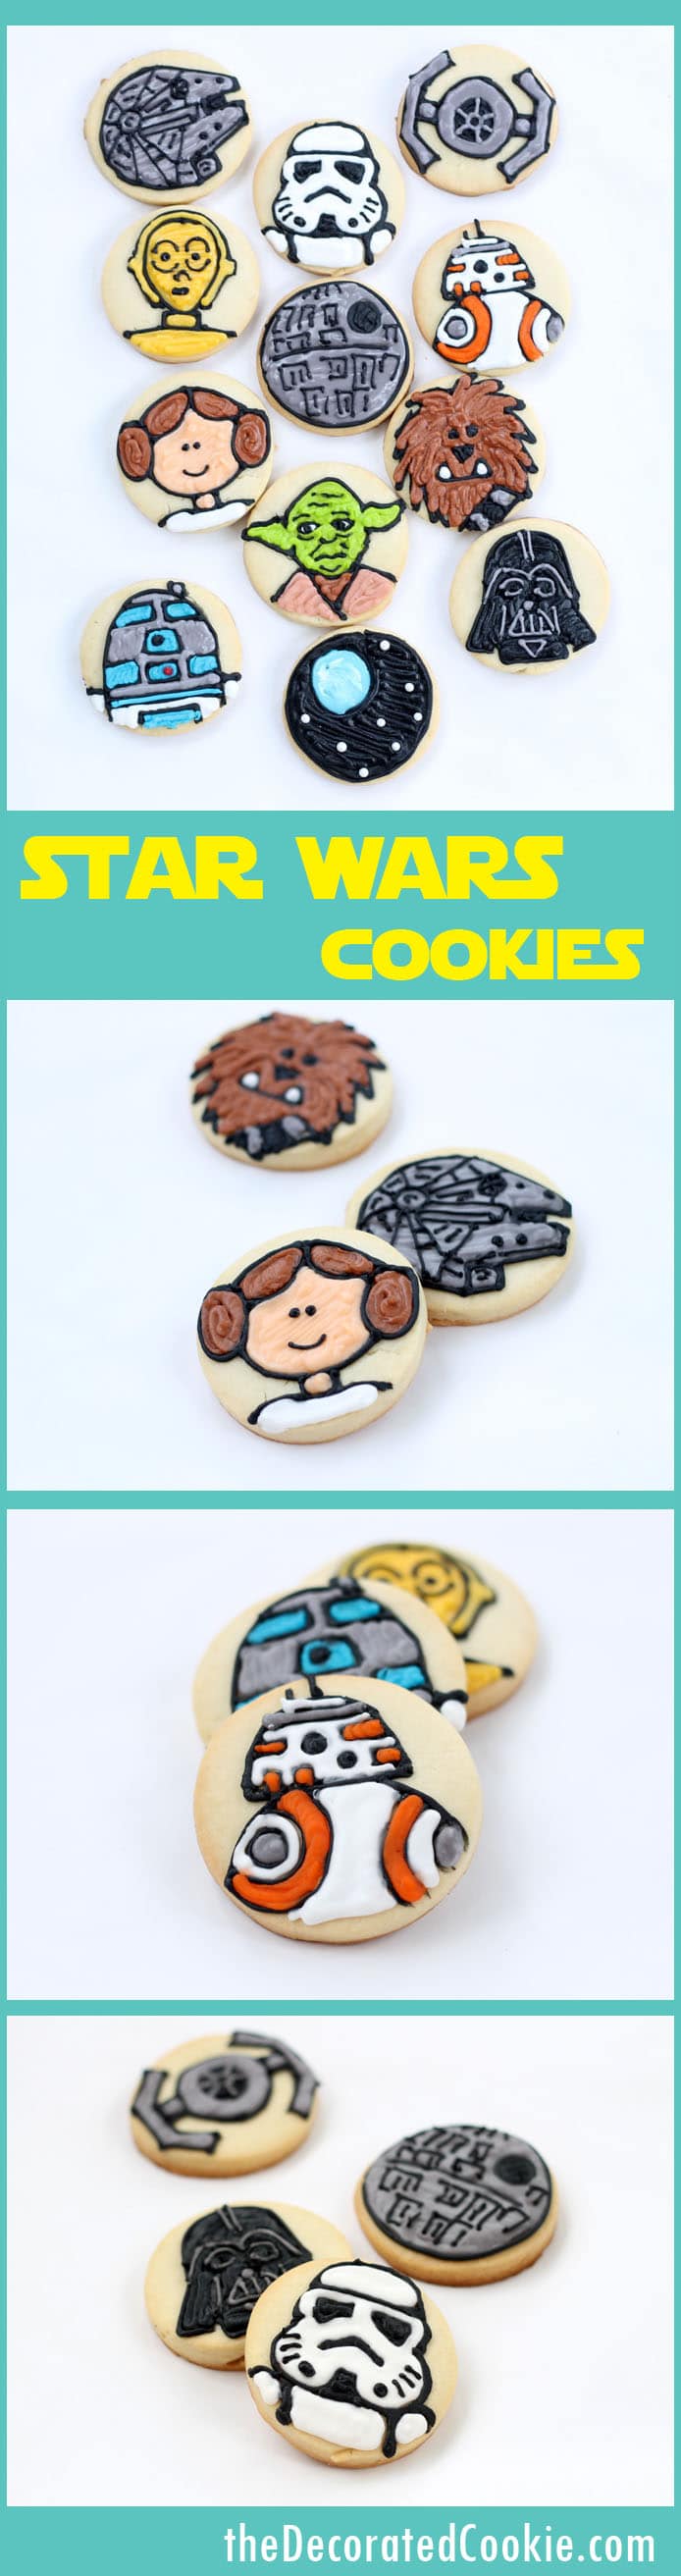 star wars cookies 